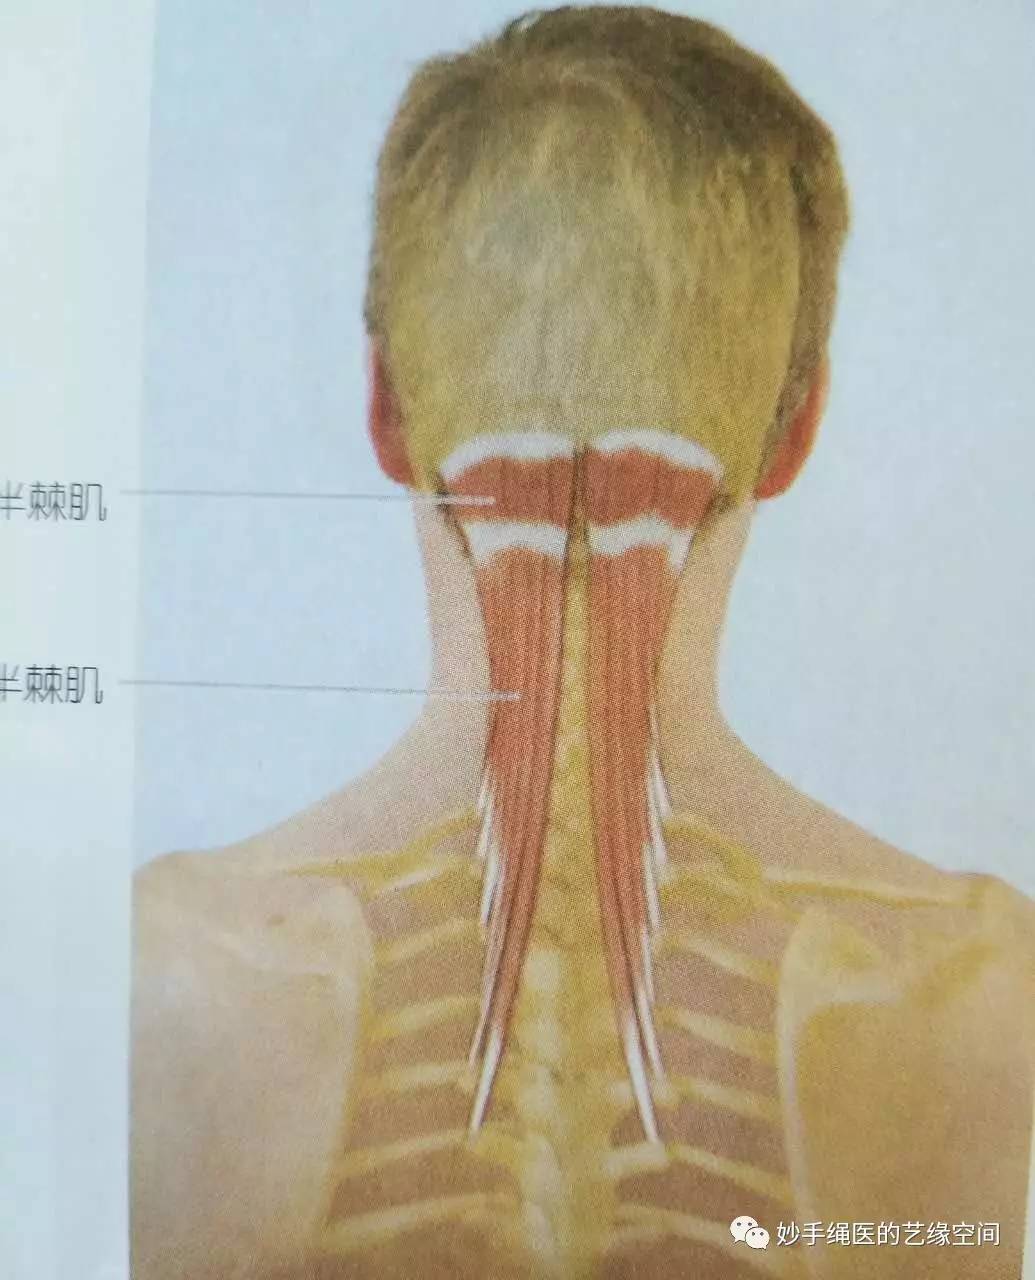 半棘肌颈夹肌将上胸椎的棘突和上颈椎的横突联系起来